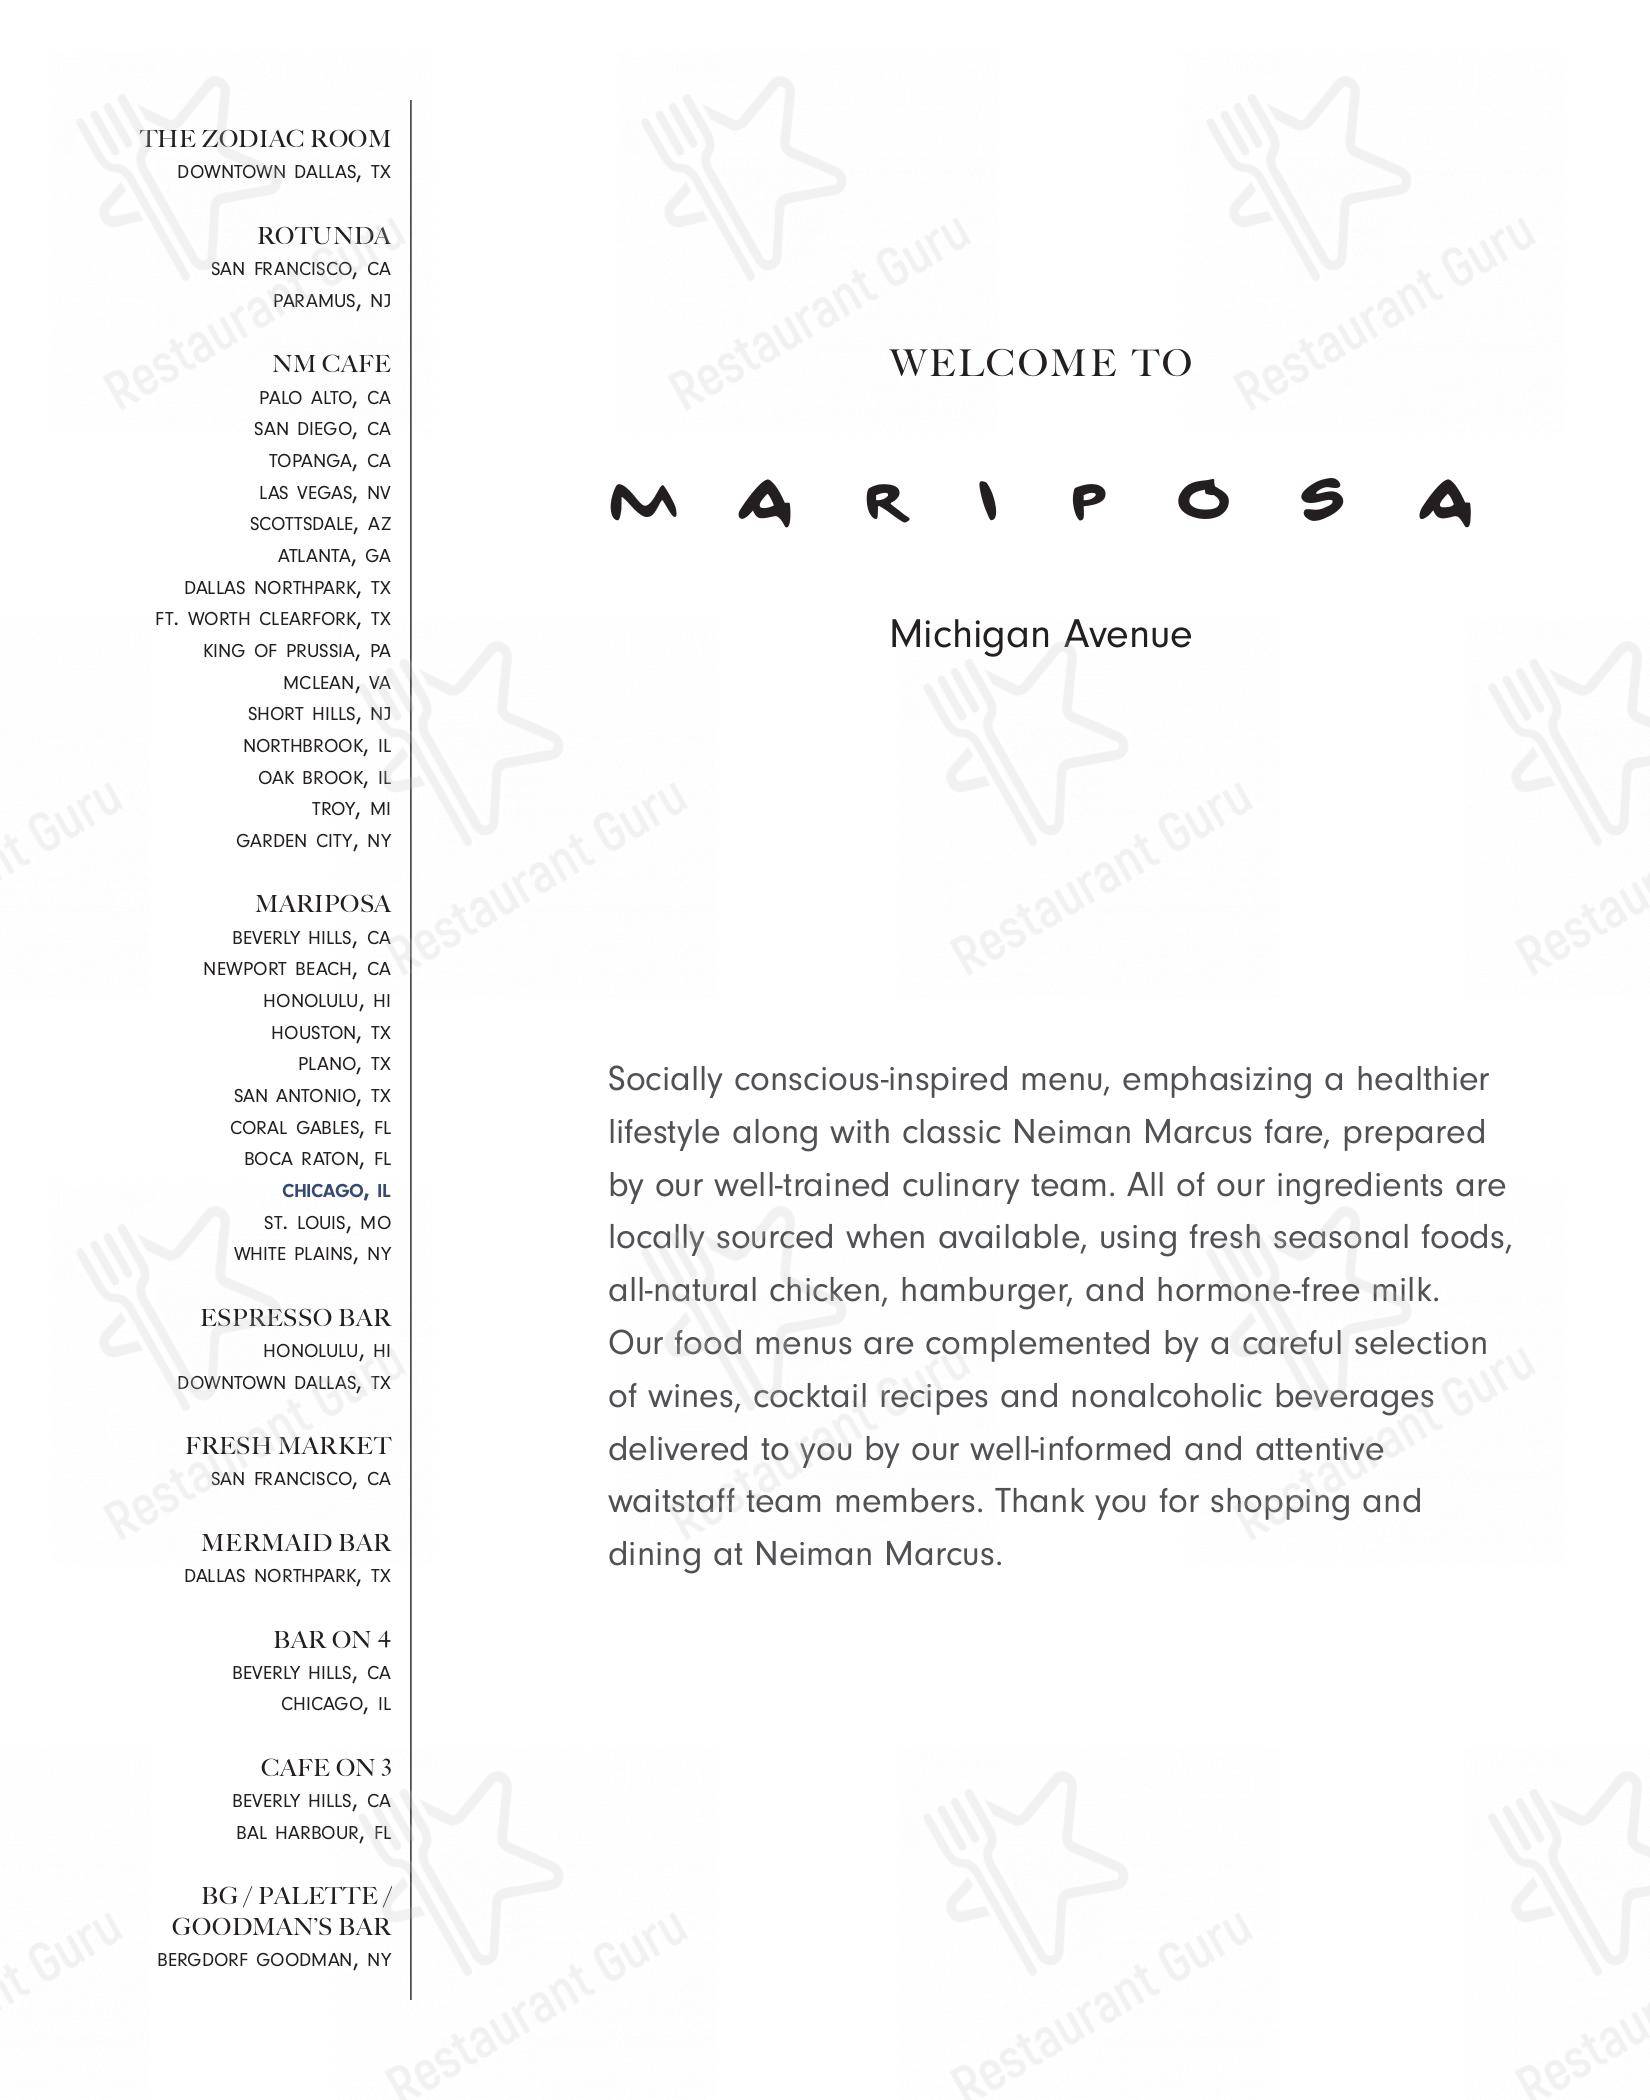 Mariposa at Neiman Marcus - Michigan Avenue Restaurant - Chicago